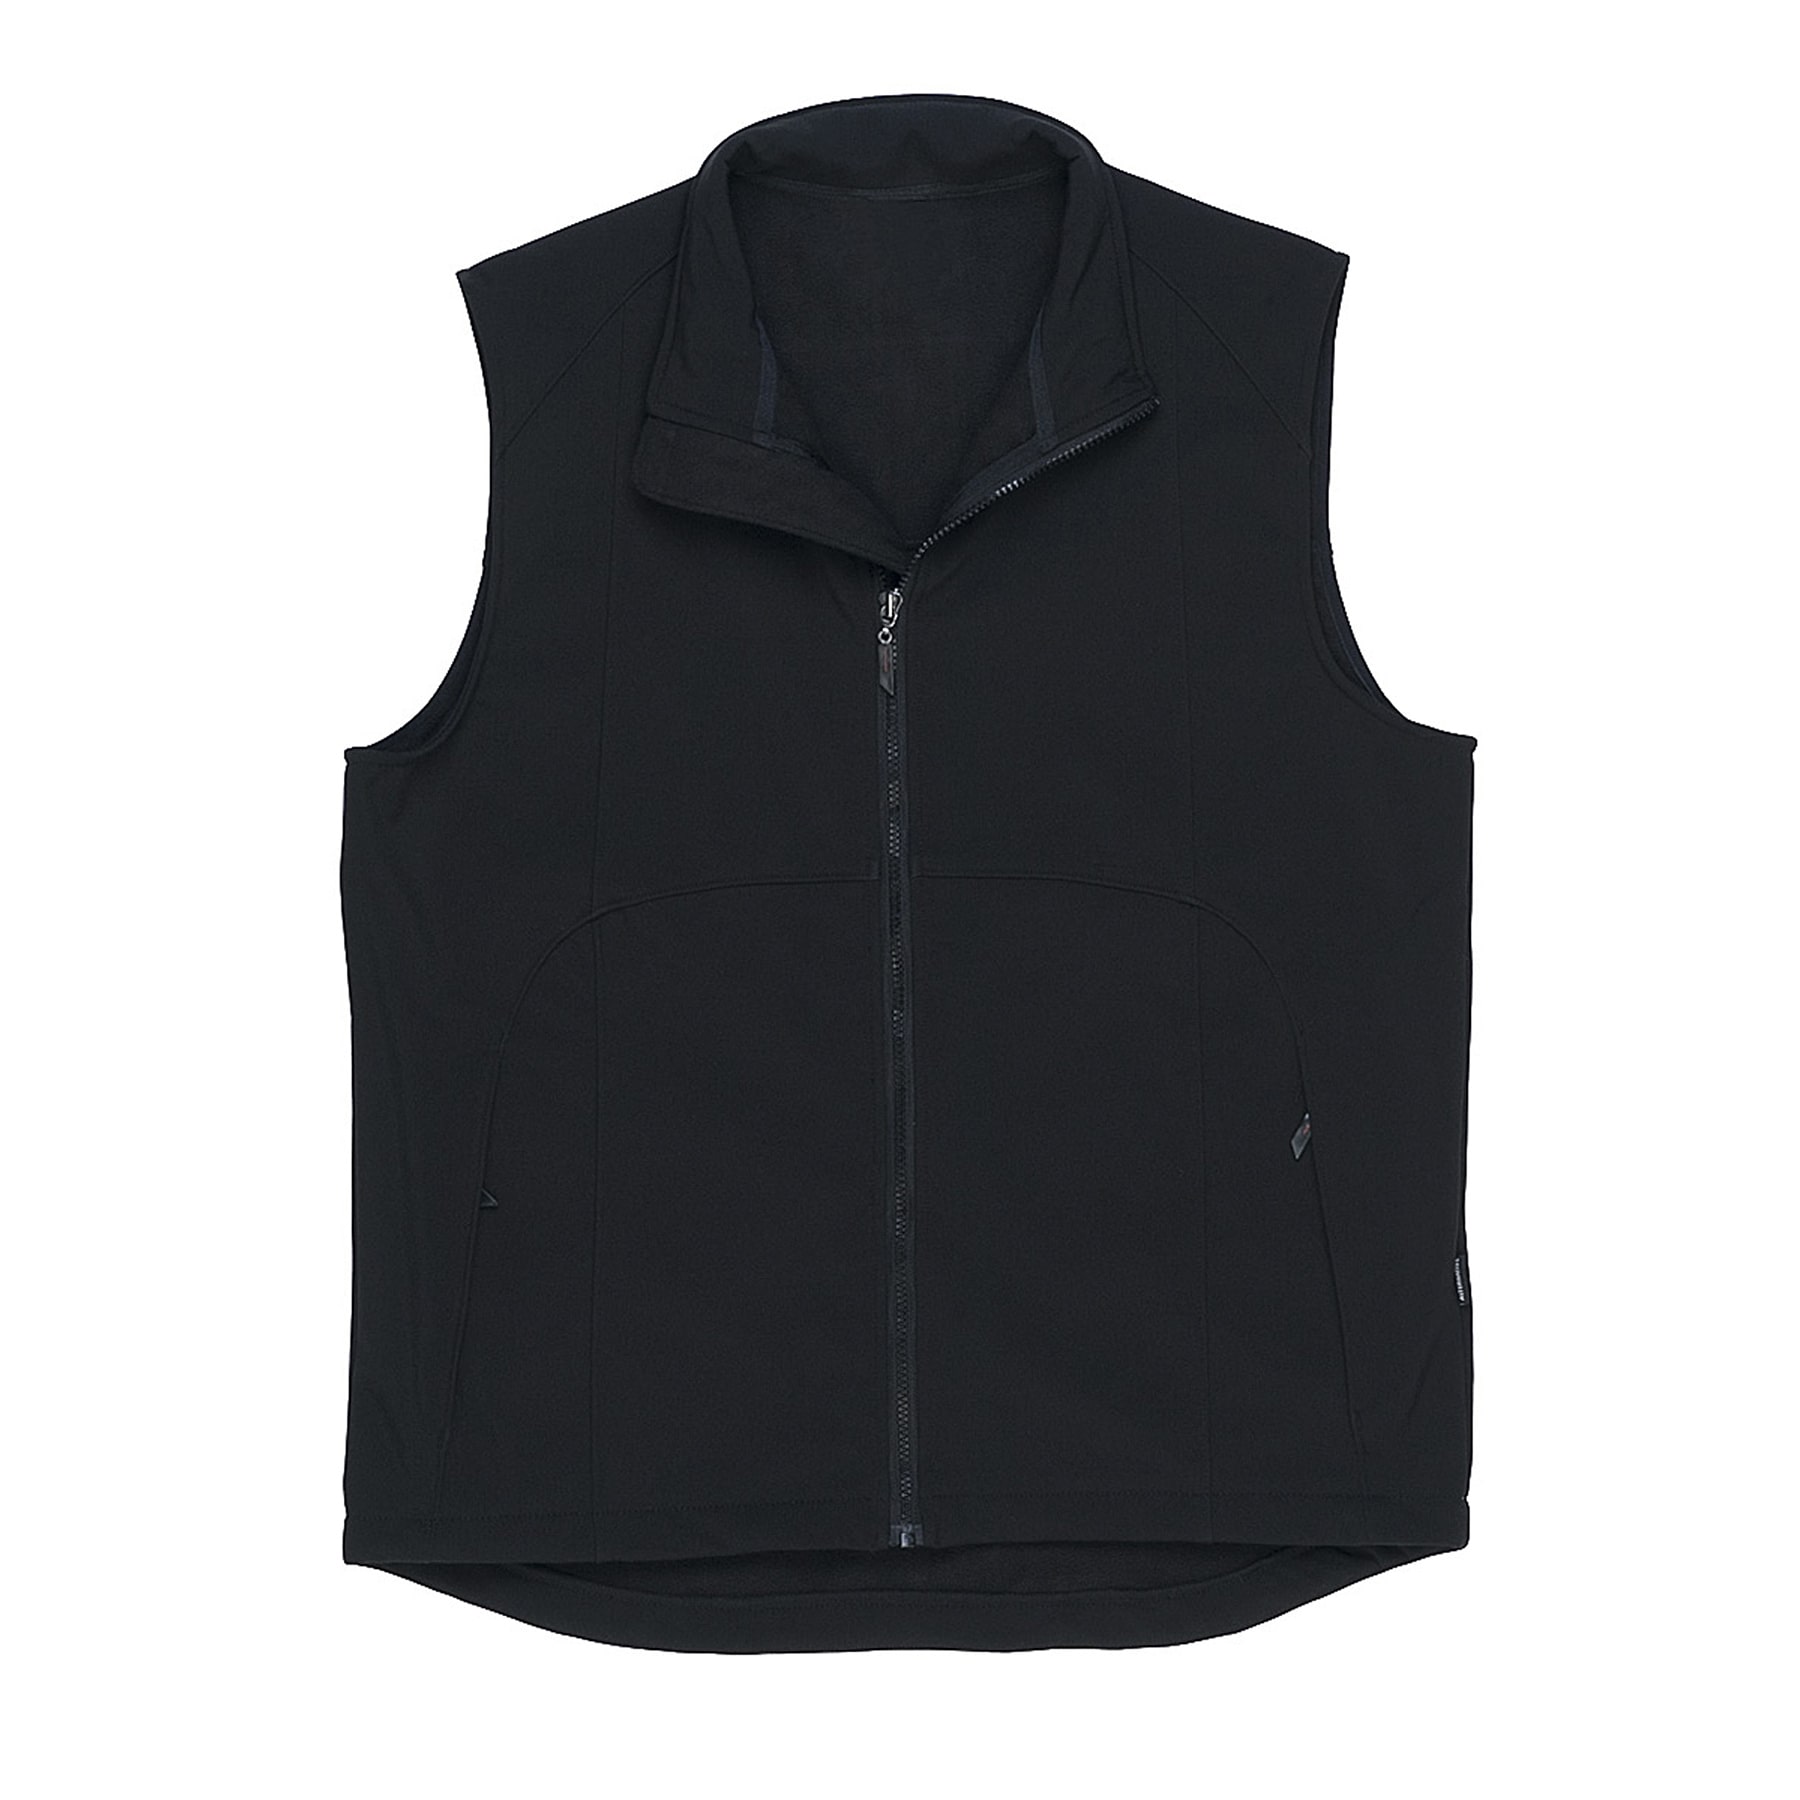 Summit Vest | Uniforms.com.au | Biz Collection, Short, Apron Vests for ...